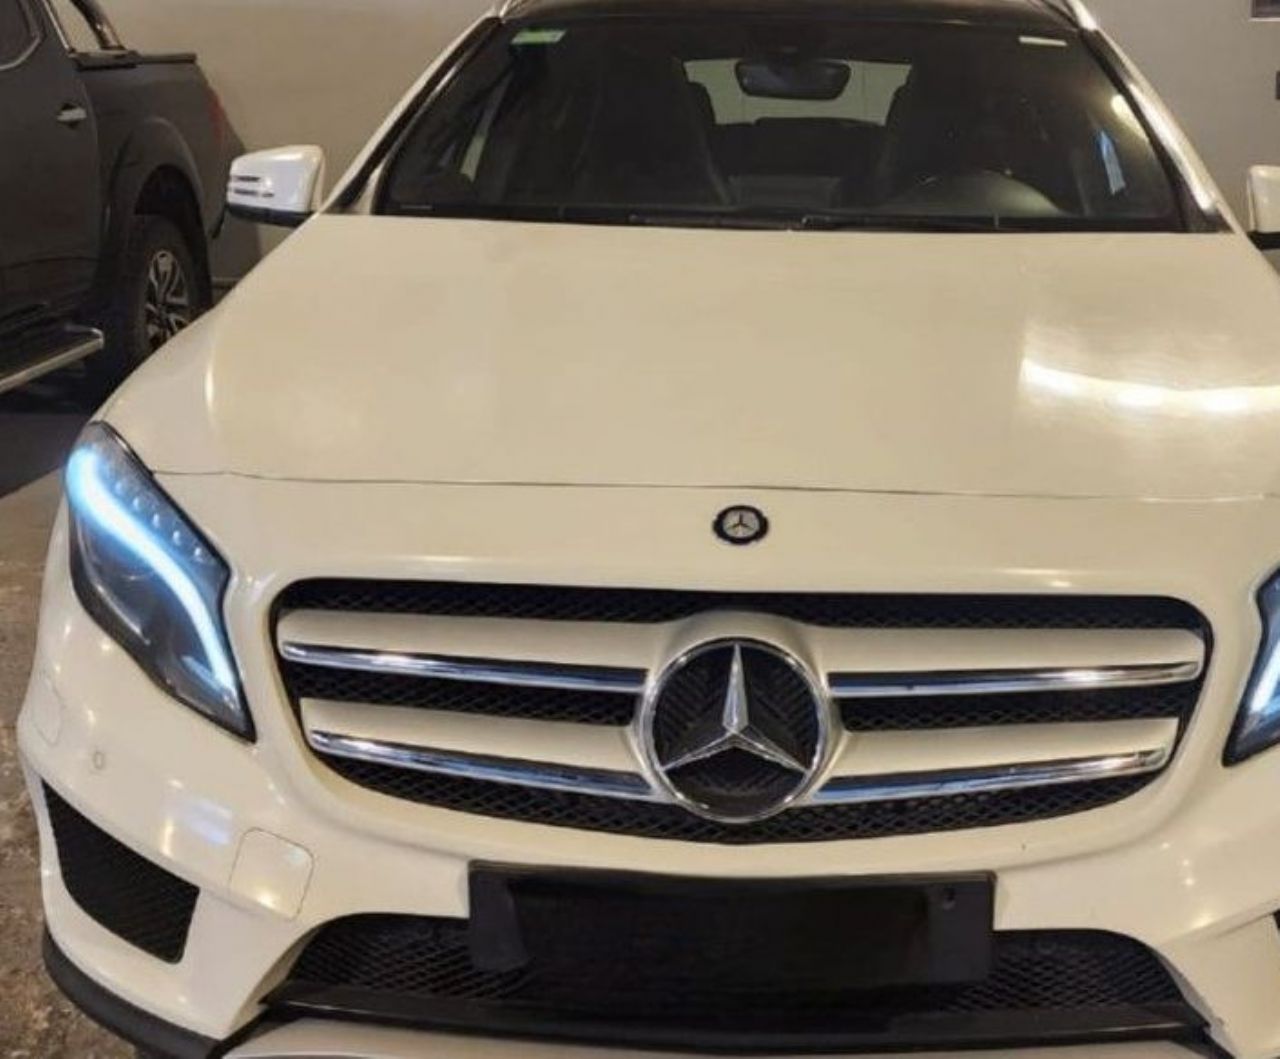 Mercedes Benz Clase GLA Usado Financiado en Mendoza, deRuedas